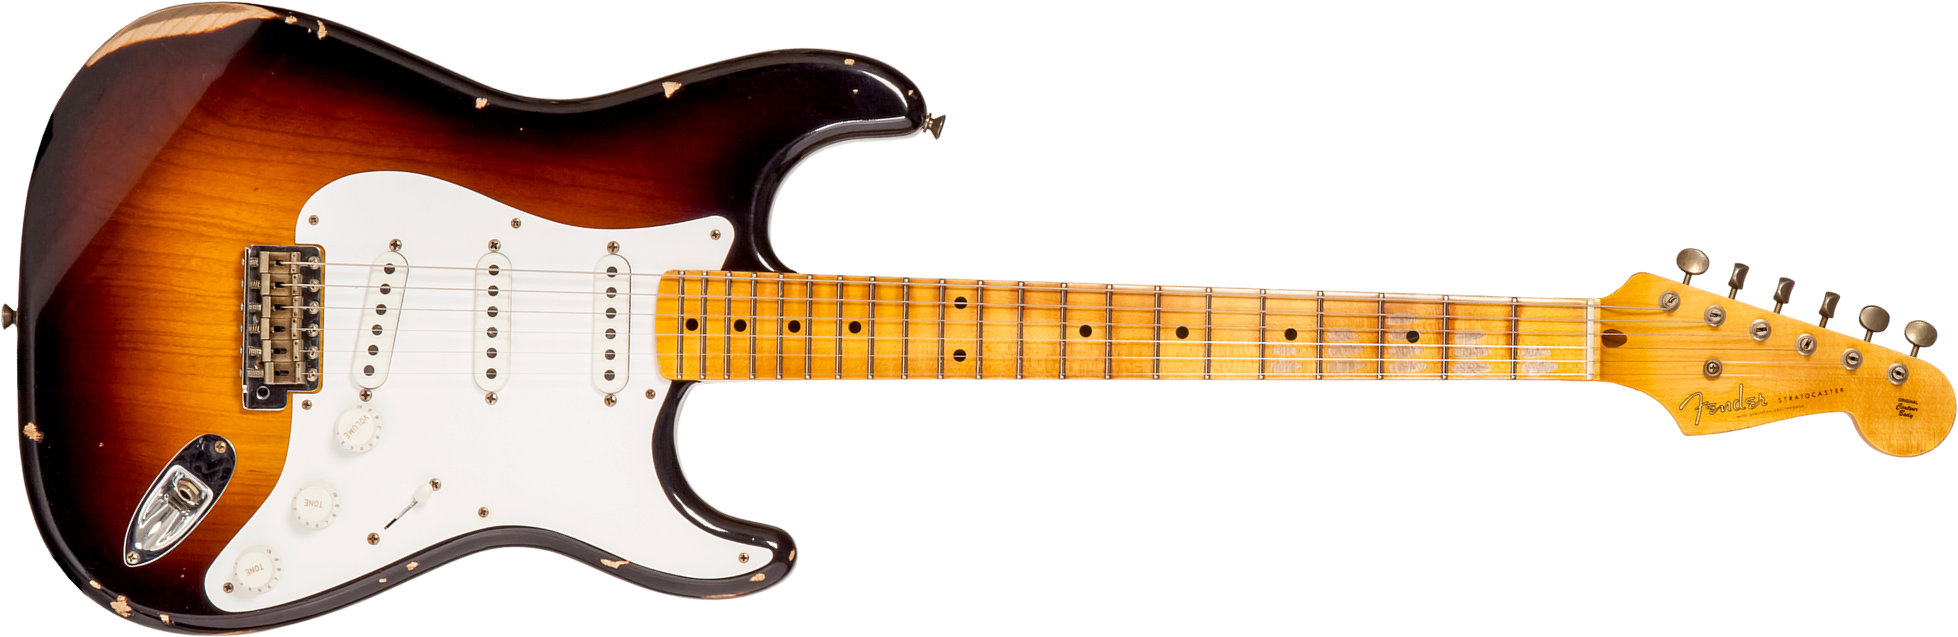 Fender Custom Shop Strat 1954 70th Anniv. 3s Trem Mn #xn4158 - Relic Wide-fade 2-color Sunburst - E-Gitarre in Str-Form - Main picture